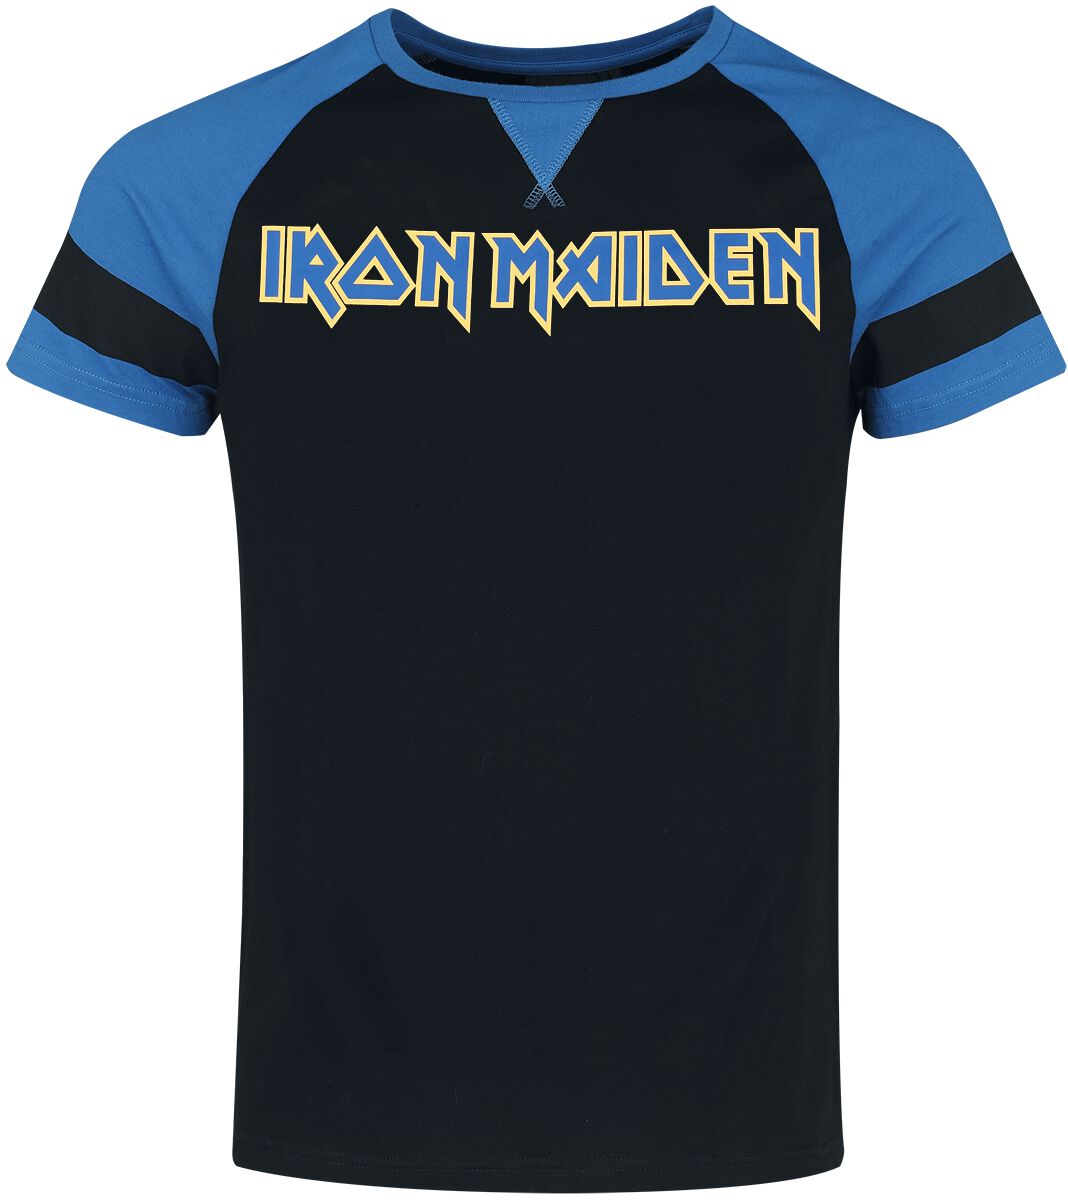 Iron Maiden T-Shirt - S bis XXL - für Männer - Größe M - schwarz/blau  - EMP exklusives Merchandise!